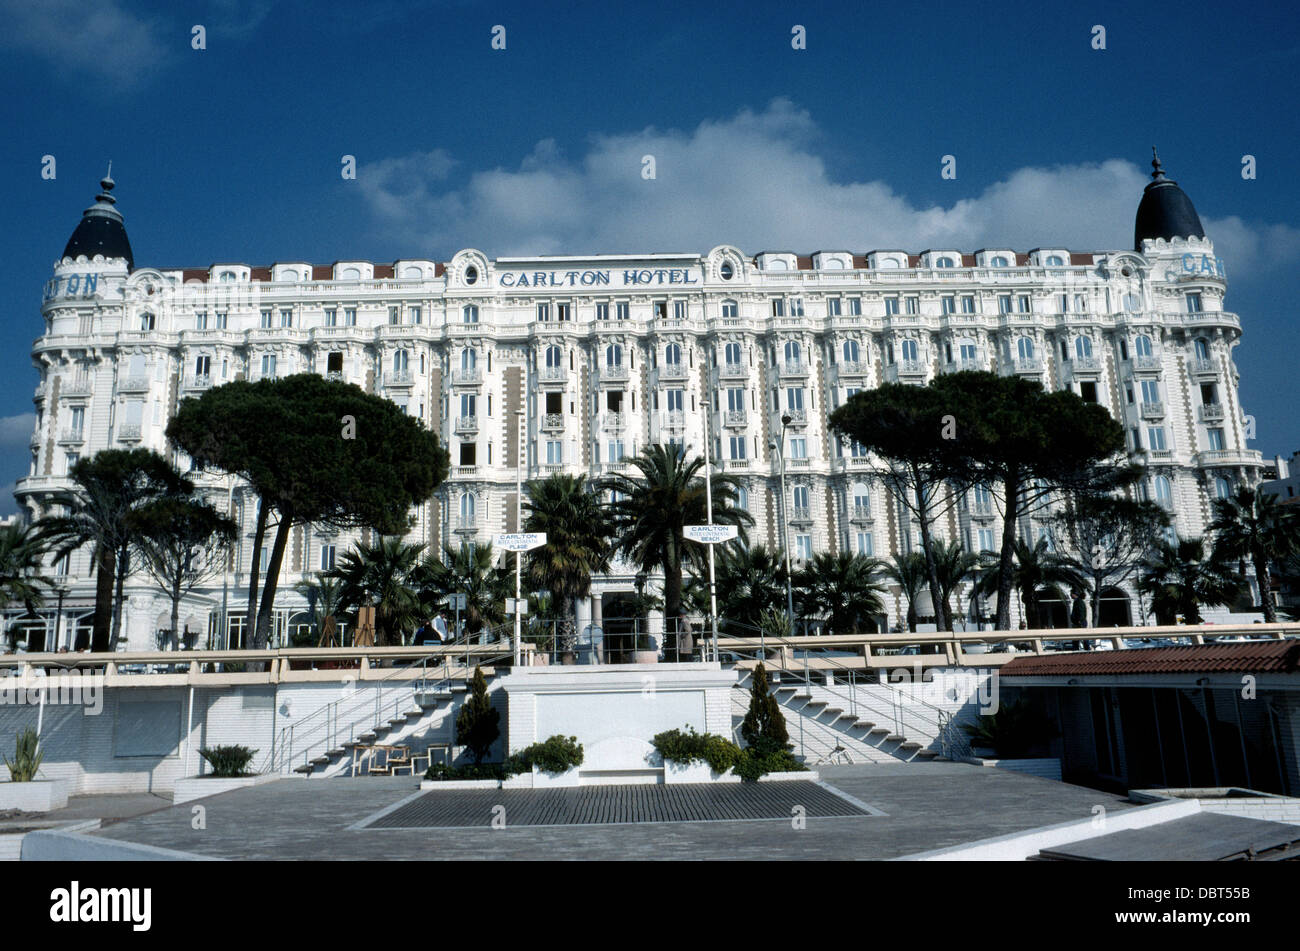 Das Art-deco-InterContinental Carlton Hotel an der französischen Riviera in Cannes, Frankreich, feierte seinen 100. Geburtstag im Jahr 2013. Stockfoto